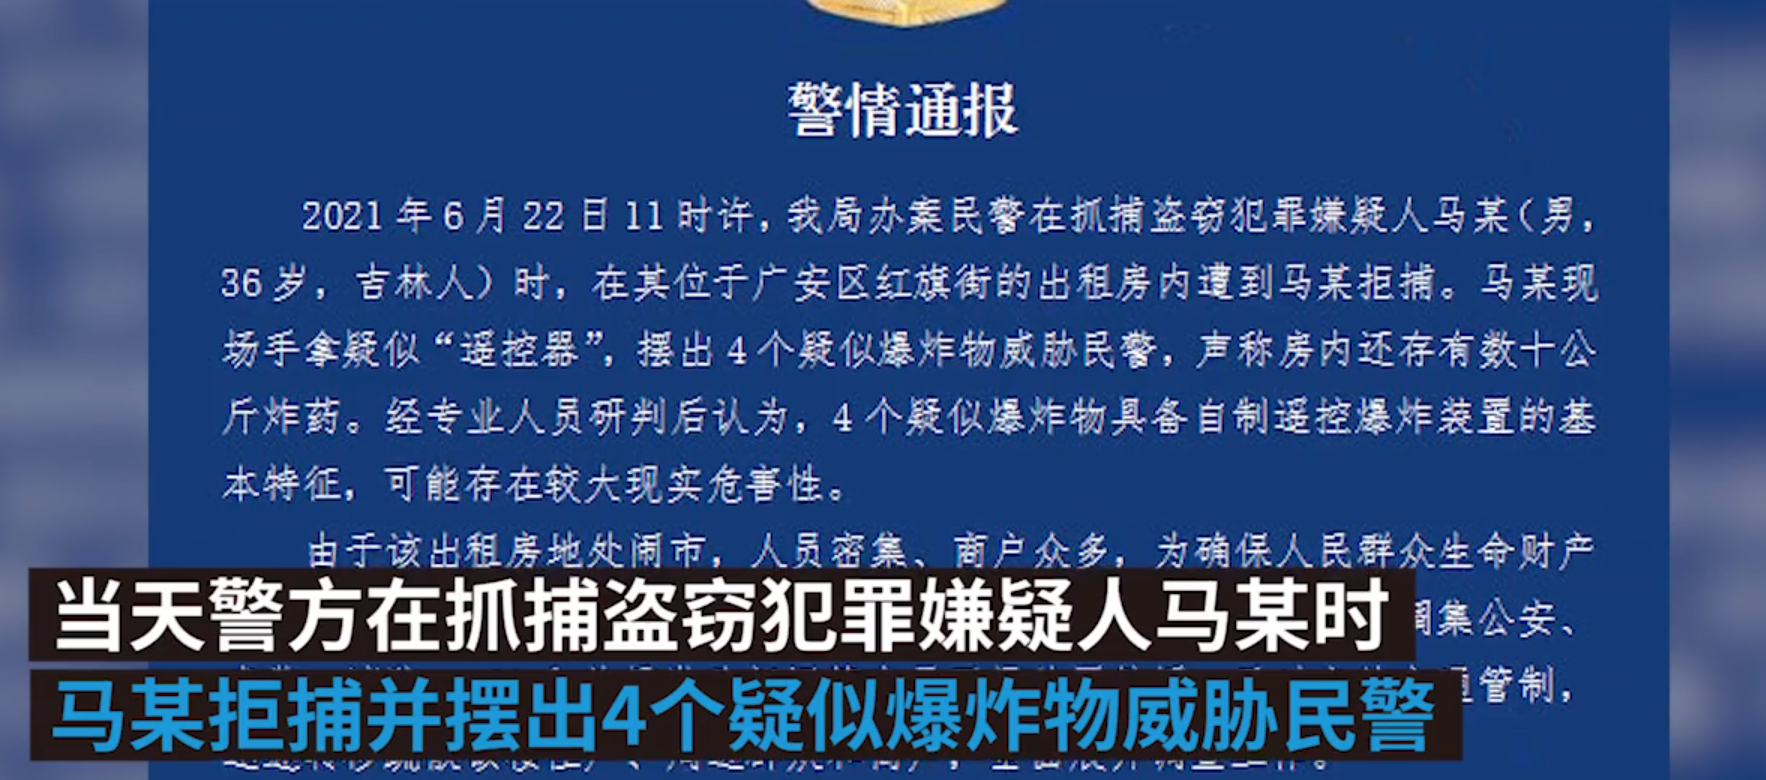 男子持爆炸物对峙后被击毙全过程 四川广安发布警情通报